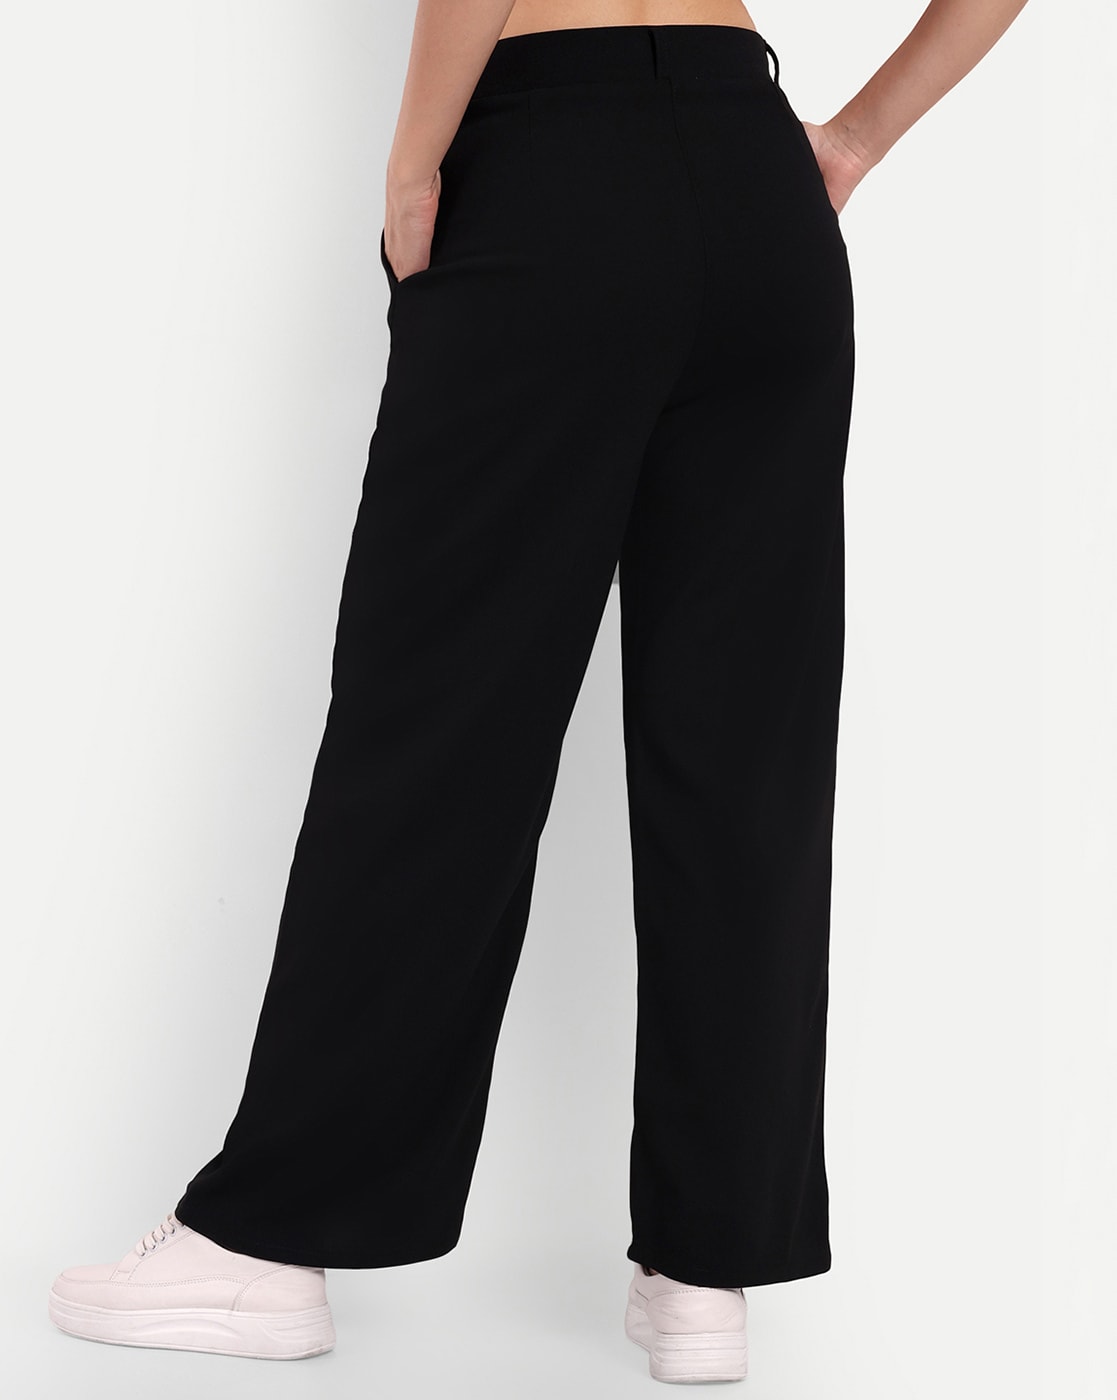 Buy Black Trousers  Pants for Women by Broadstar Online  Ajiocom